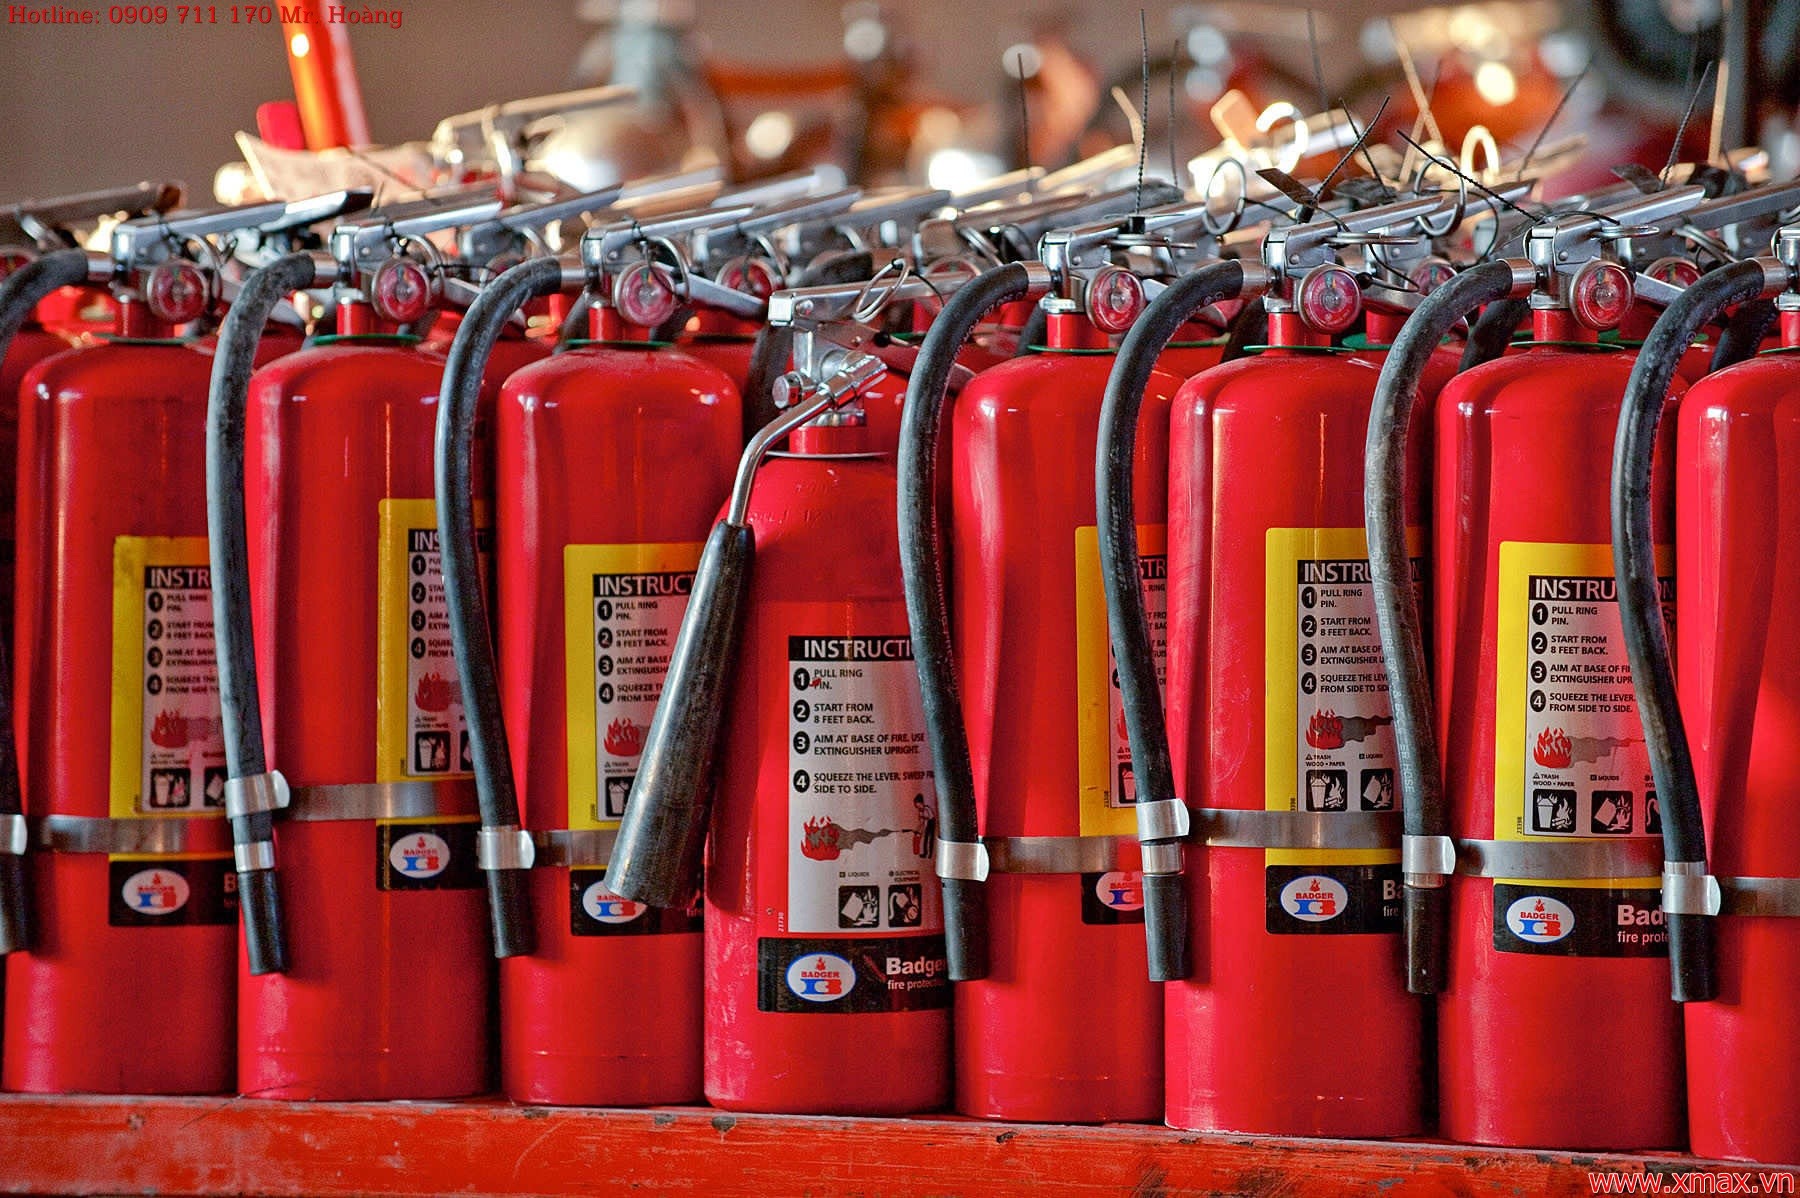 Bình chữa cháy ABC: Giải pháp an toàn cho phòng chống cháy nổ 